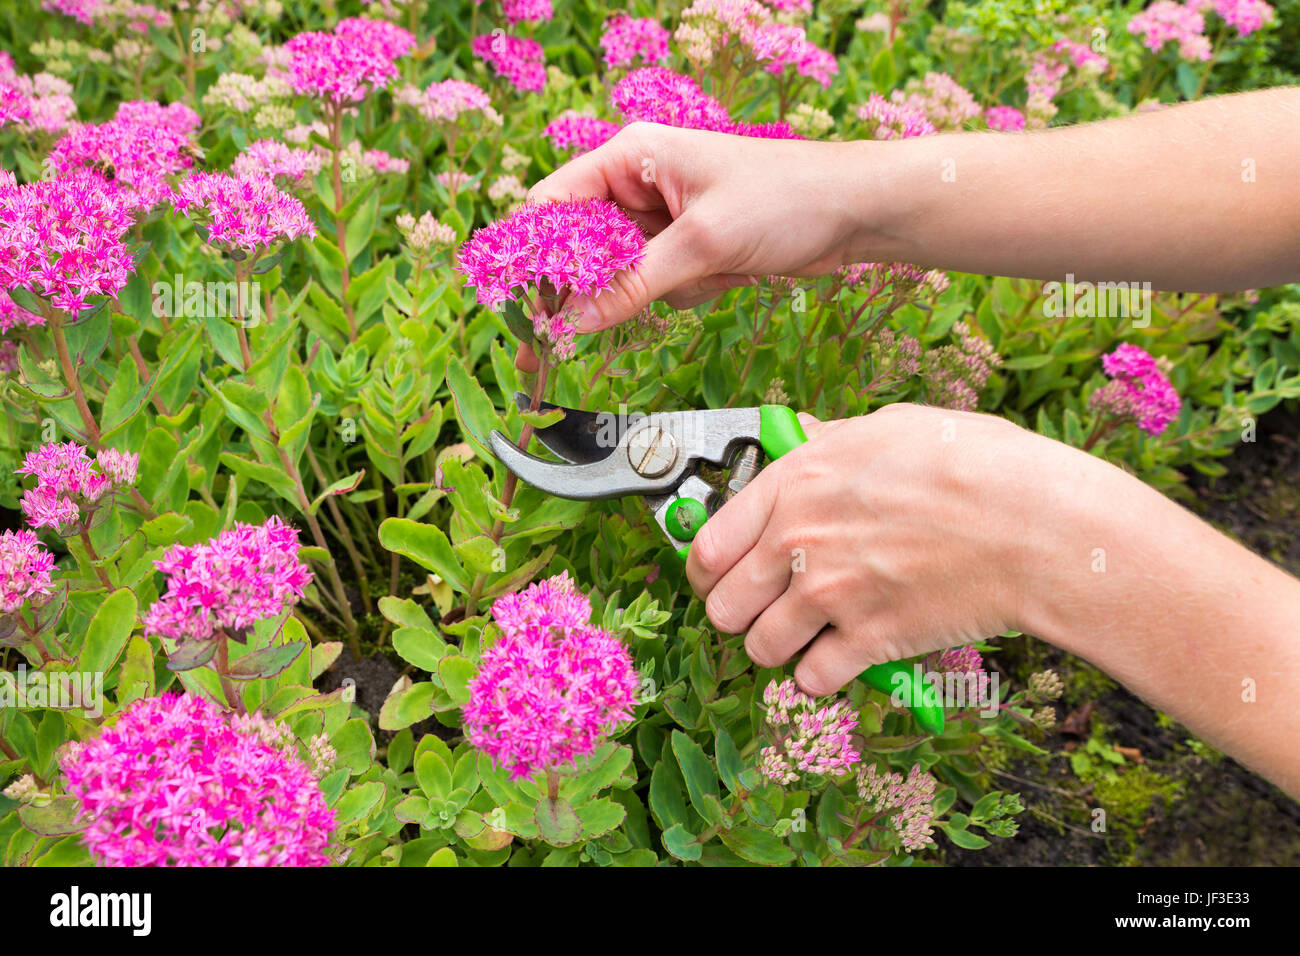 Zwei Arme schneiden Blume mit Baum-, Reb- und Gartenscheren Stockfoto